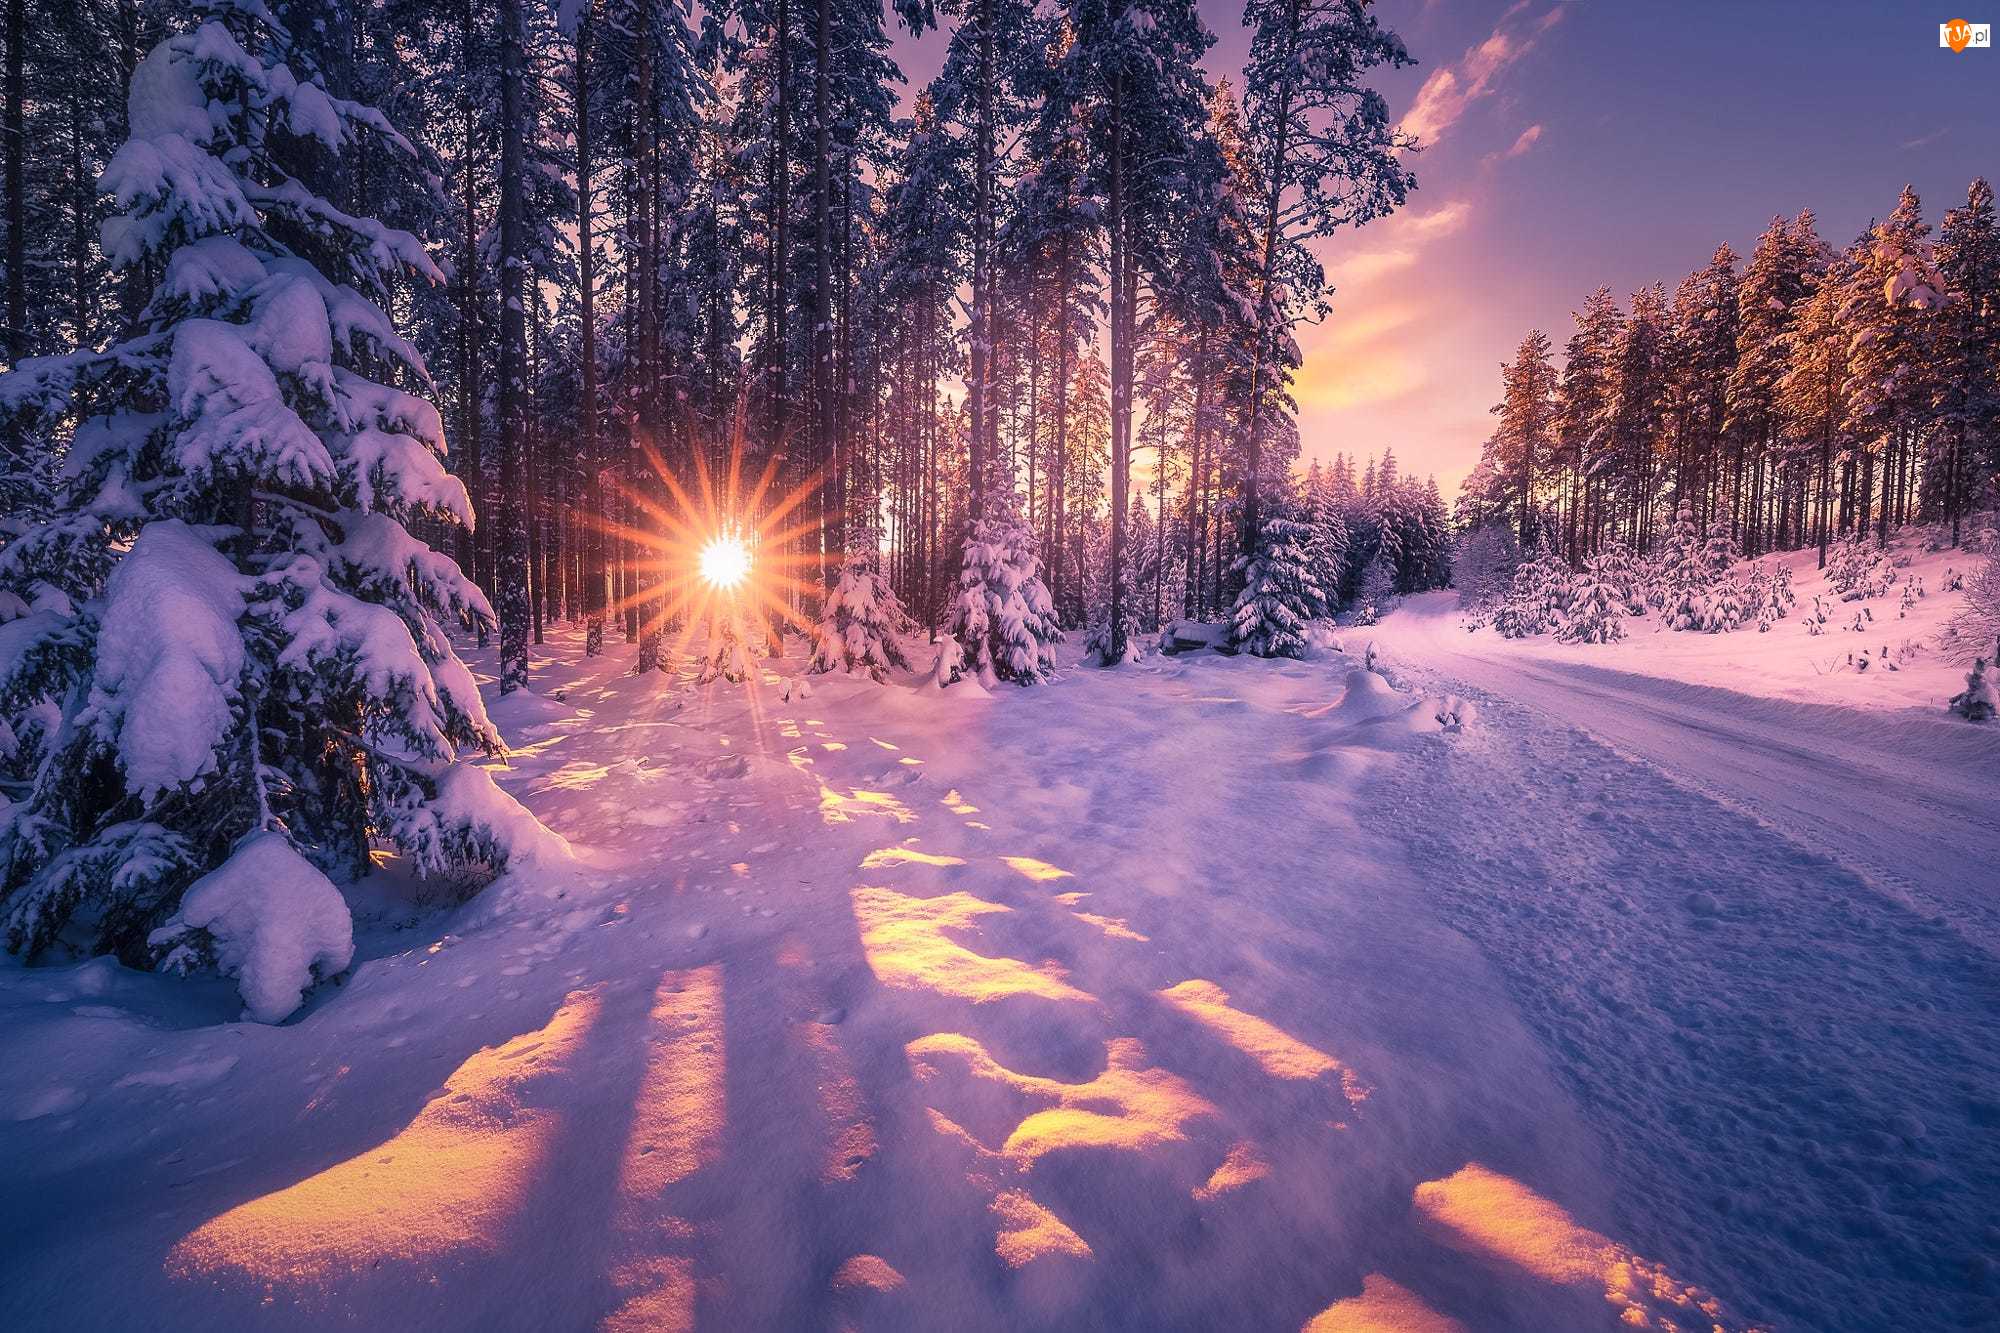 Las, Droga, Zima, Promienie słońca, Śnieg, Drzewa